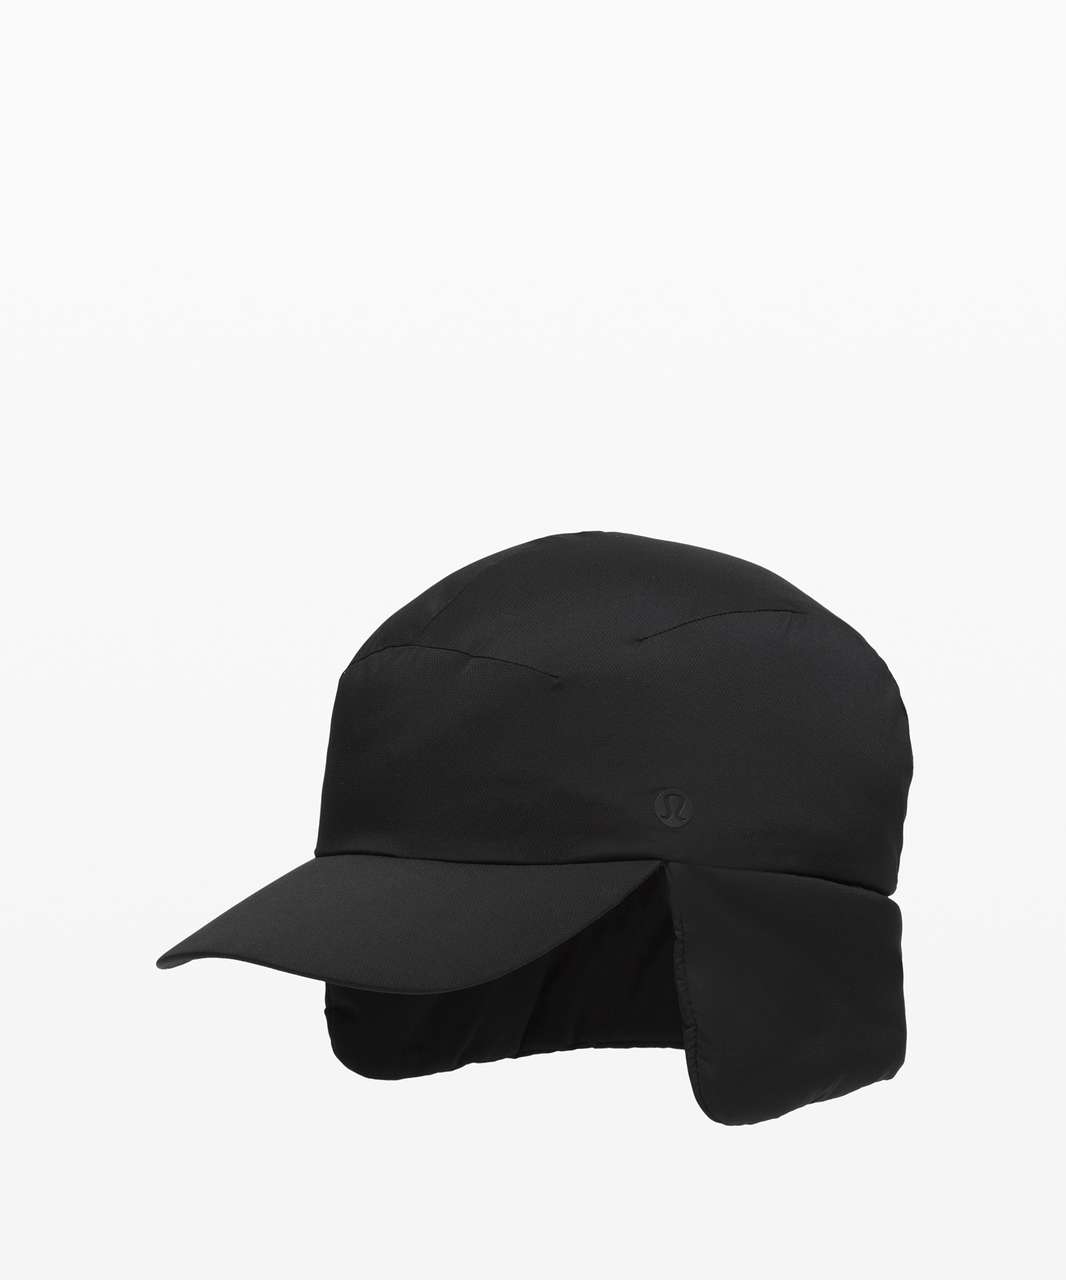 Lululemon Navigation Loft Trapper Hat - Black